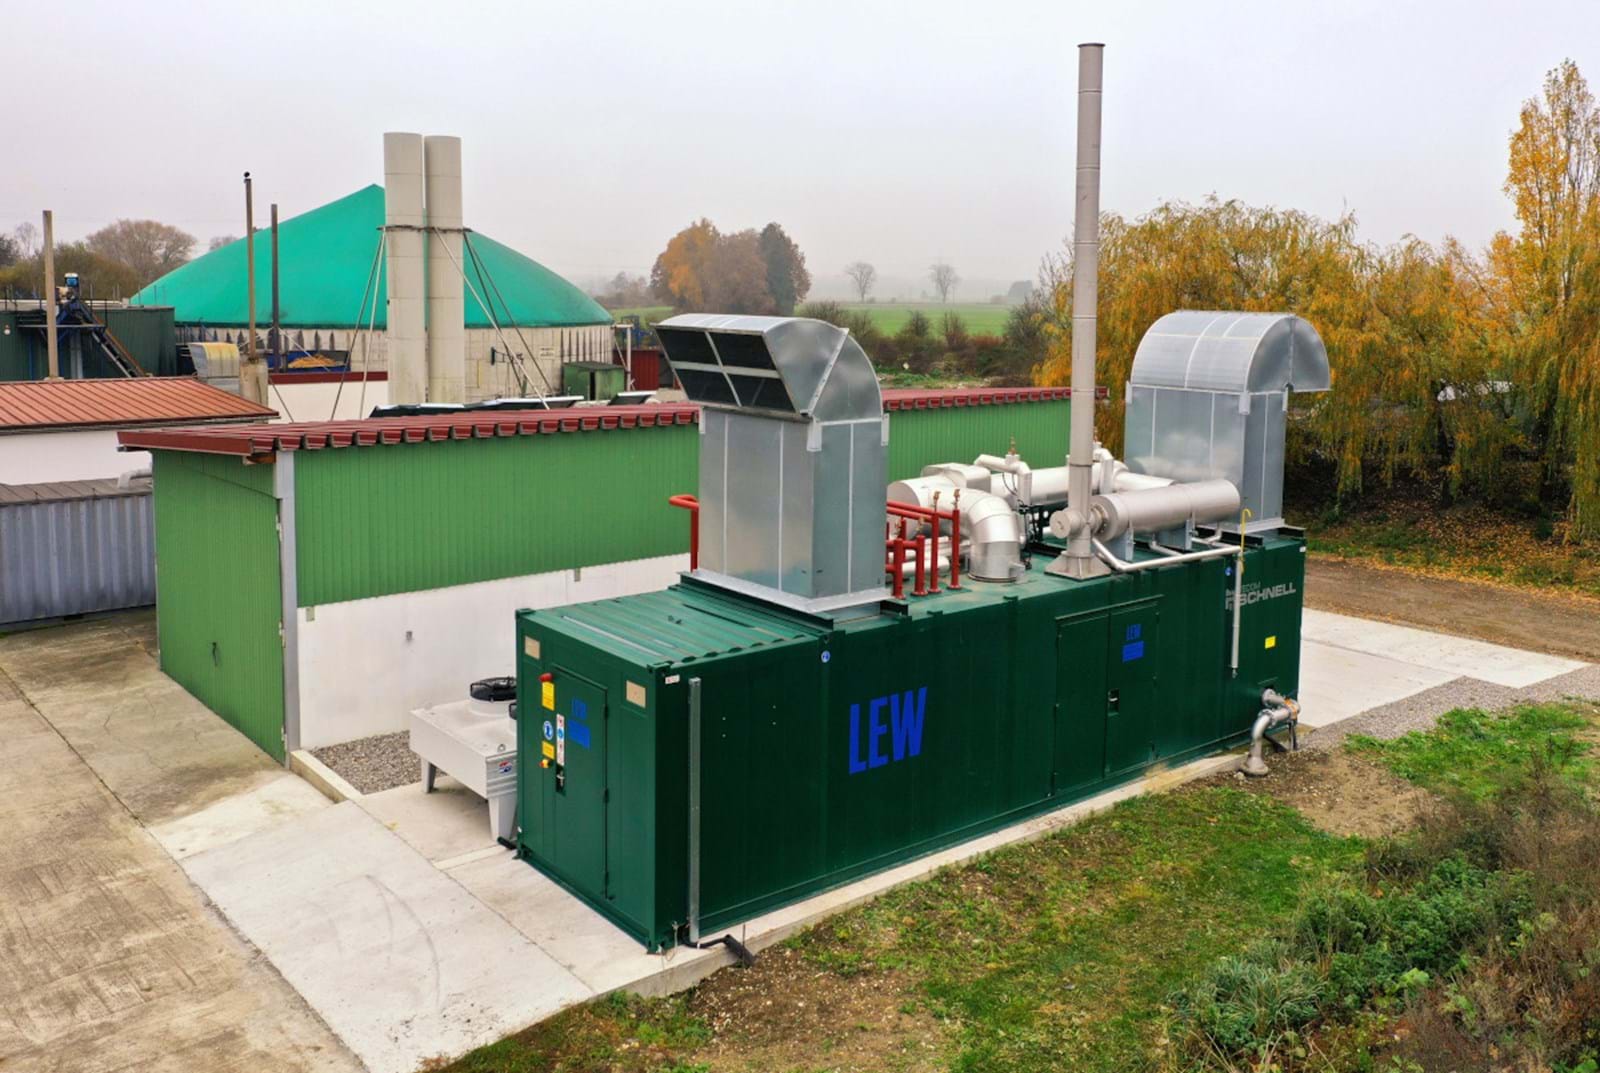 Der landwirtschaftliche Betrieb betreibt seit dem Jahr 2009 eine Biogasanlage, an die bereits drei Blockheizkraftwerke gekoppelt sind. Das neu installierte vierte BHKW nutzt das Unternehmen ausschließlich dazu, die Stromproduktion zeitlich zu flexibilisieren. 